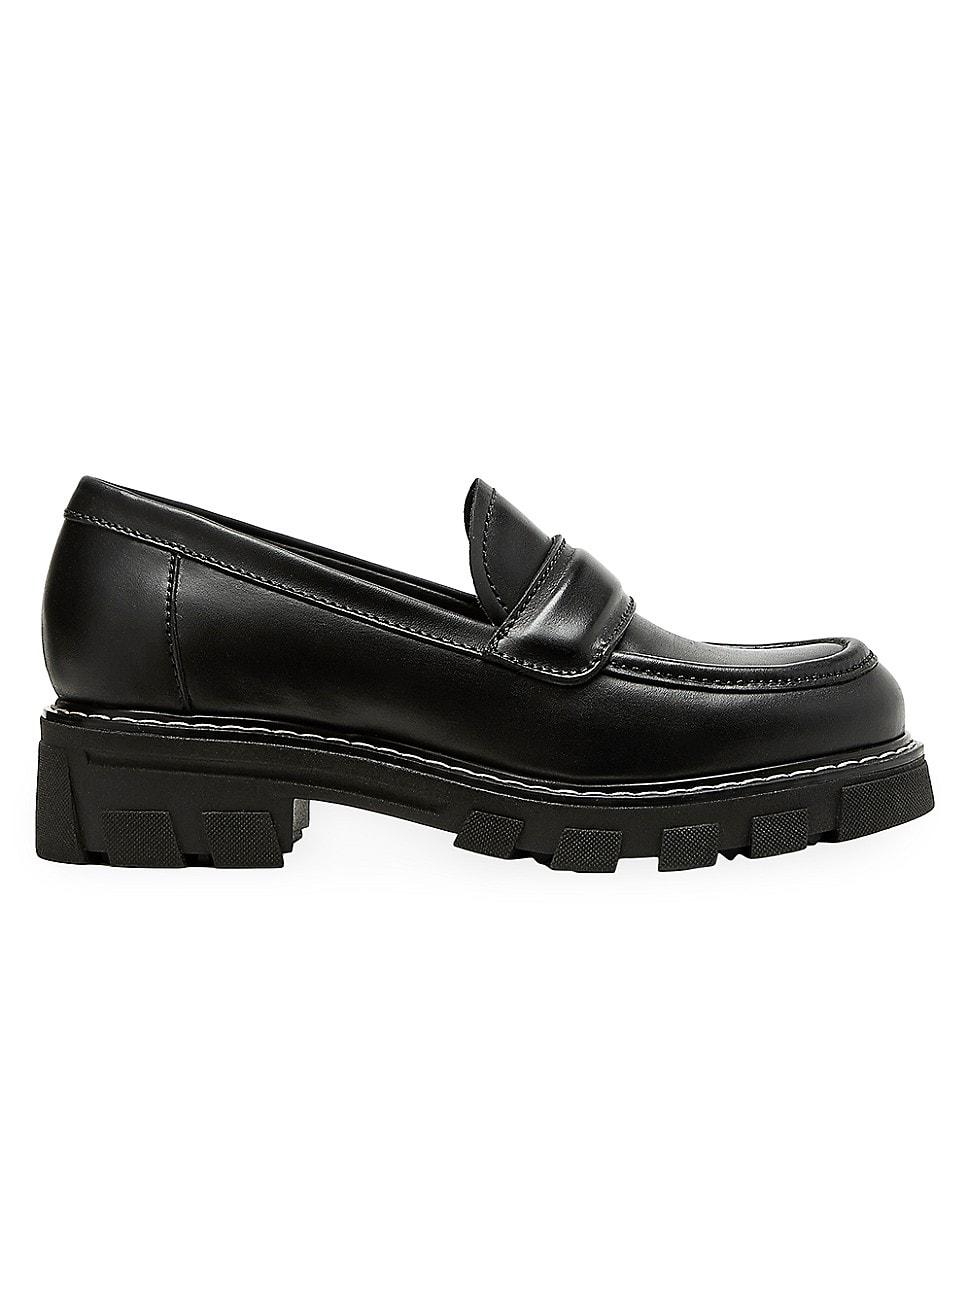 La Canadienne Douglas Leather Loafers in Black | Lyst